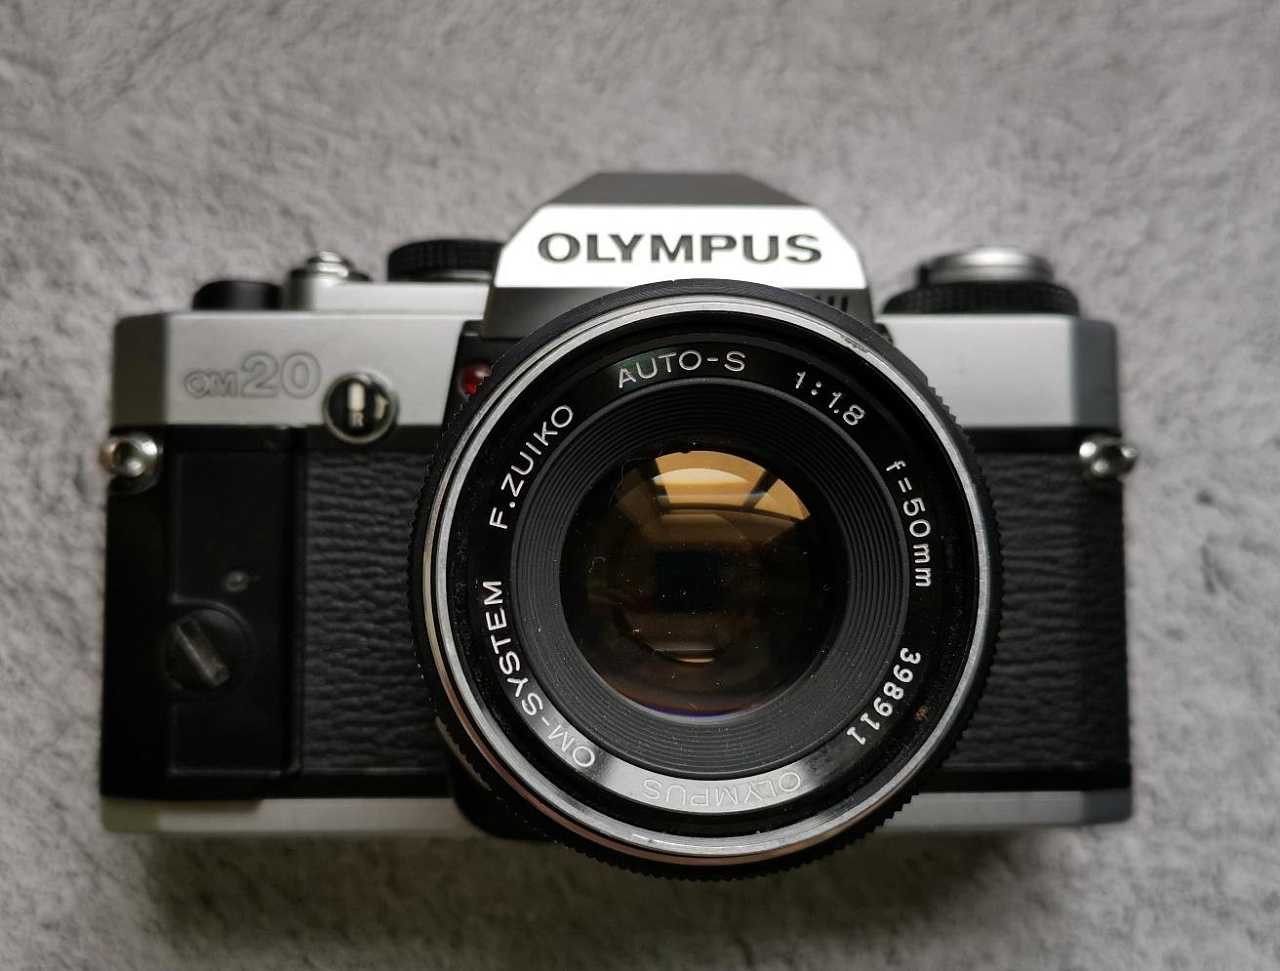 Olympus OM 20 + Olympus OM-System F.Zuiko Auto-S 50 mm f/1.8 (уценка) фото №1